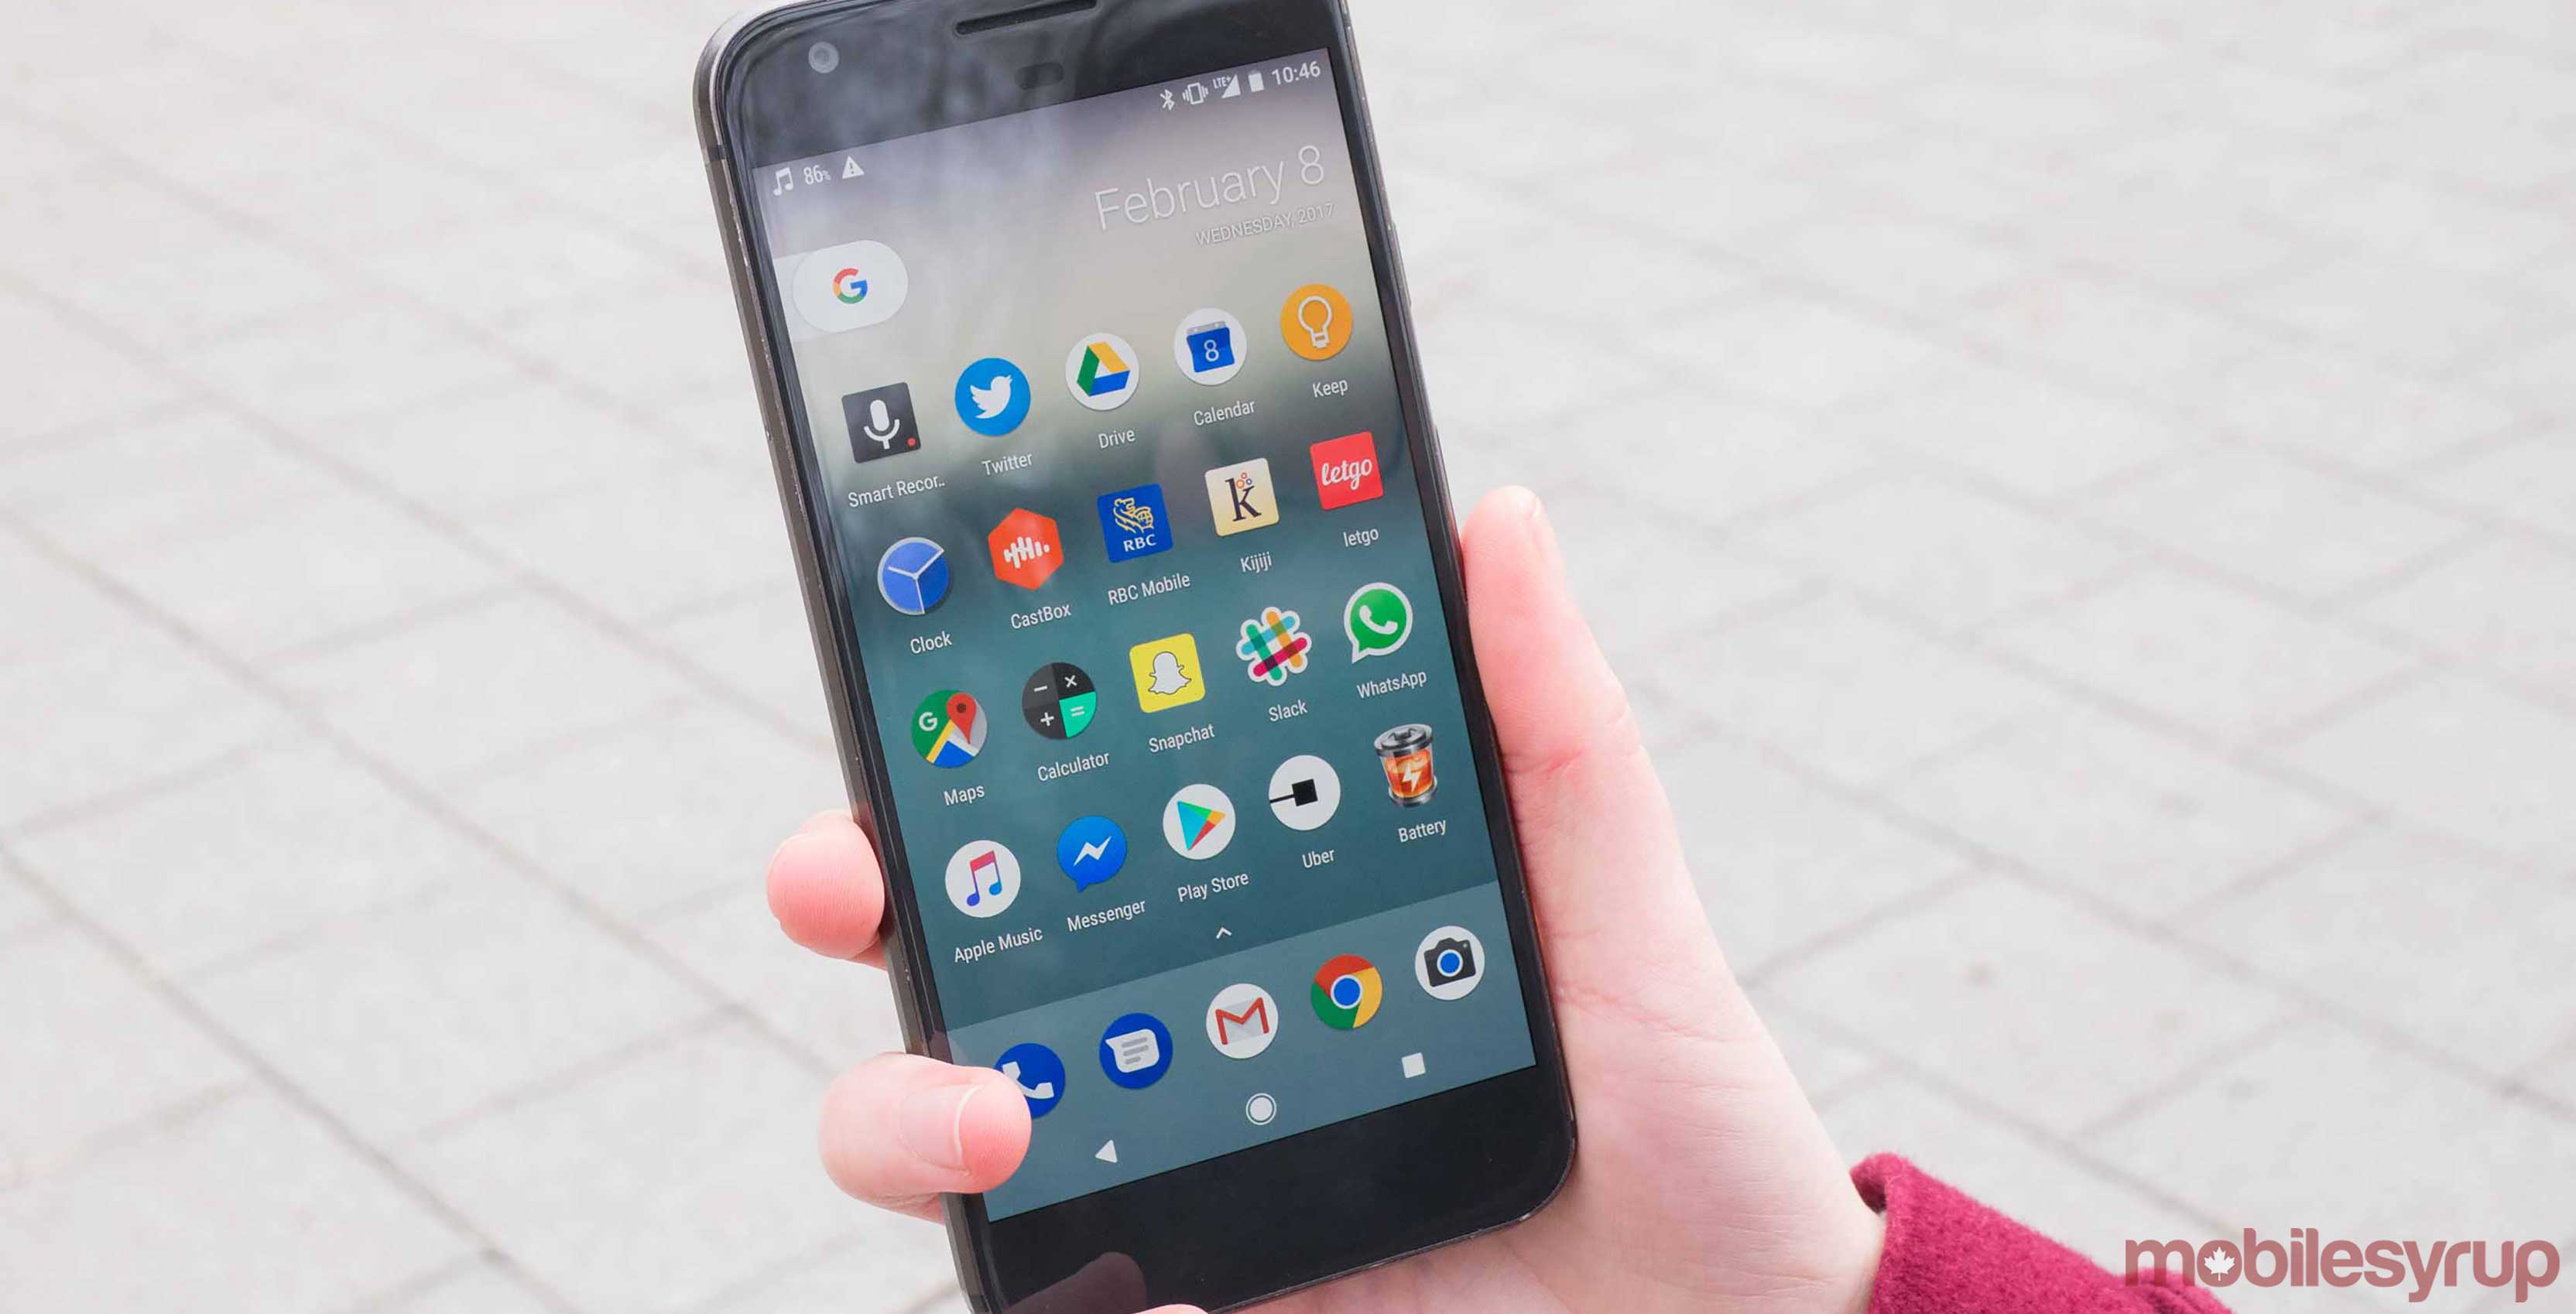 Google Pixel smartphone held in a hand